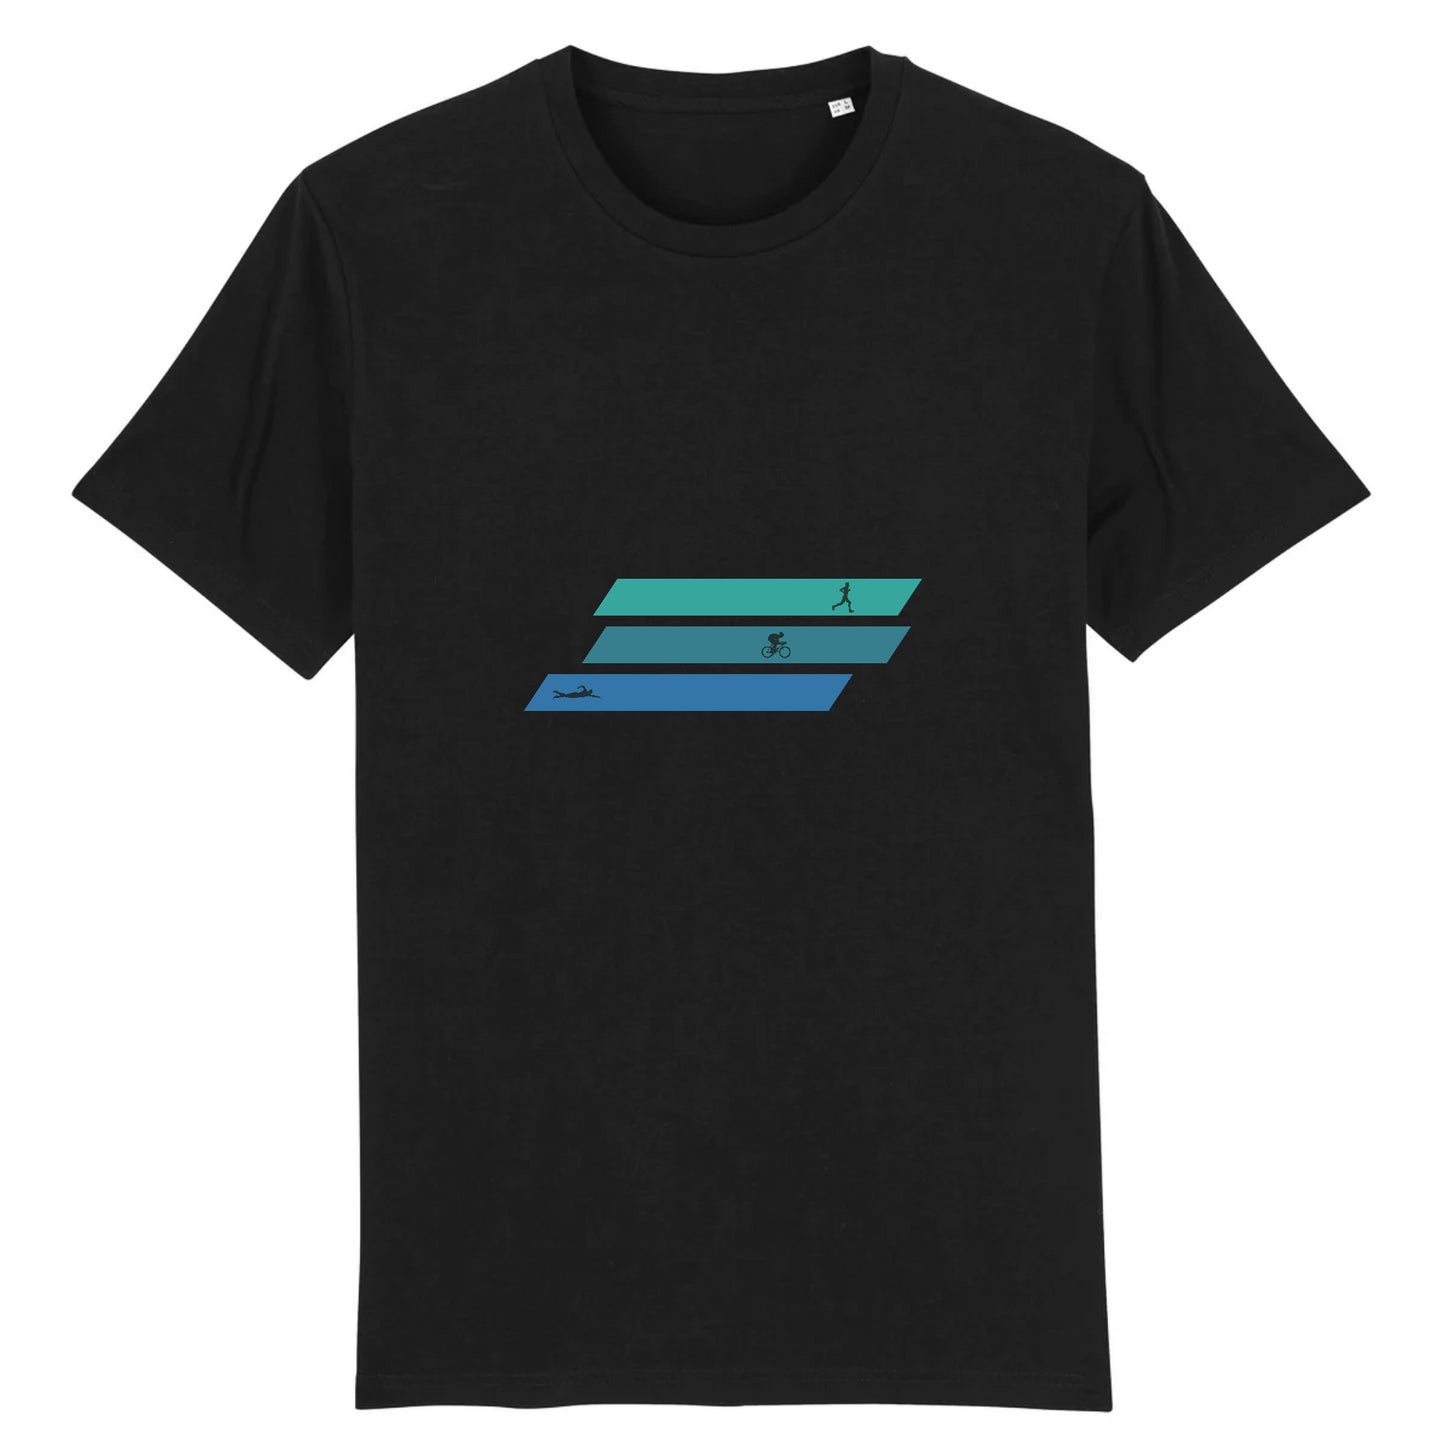 Noir T-shirt homme en coton bio inspiré du triathlon - Design unique et tendance